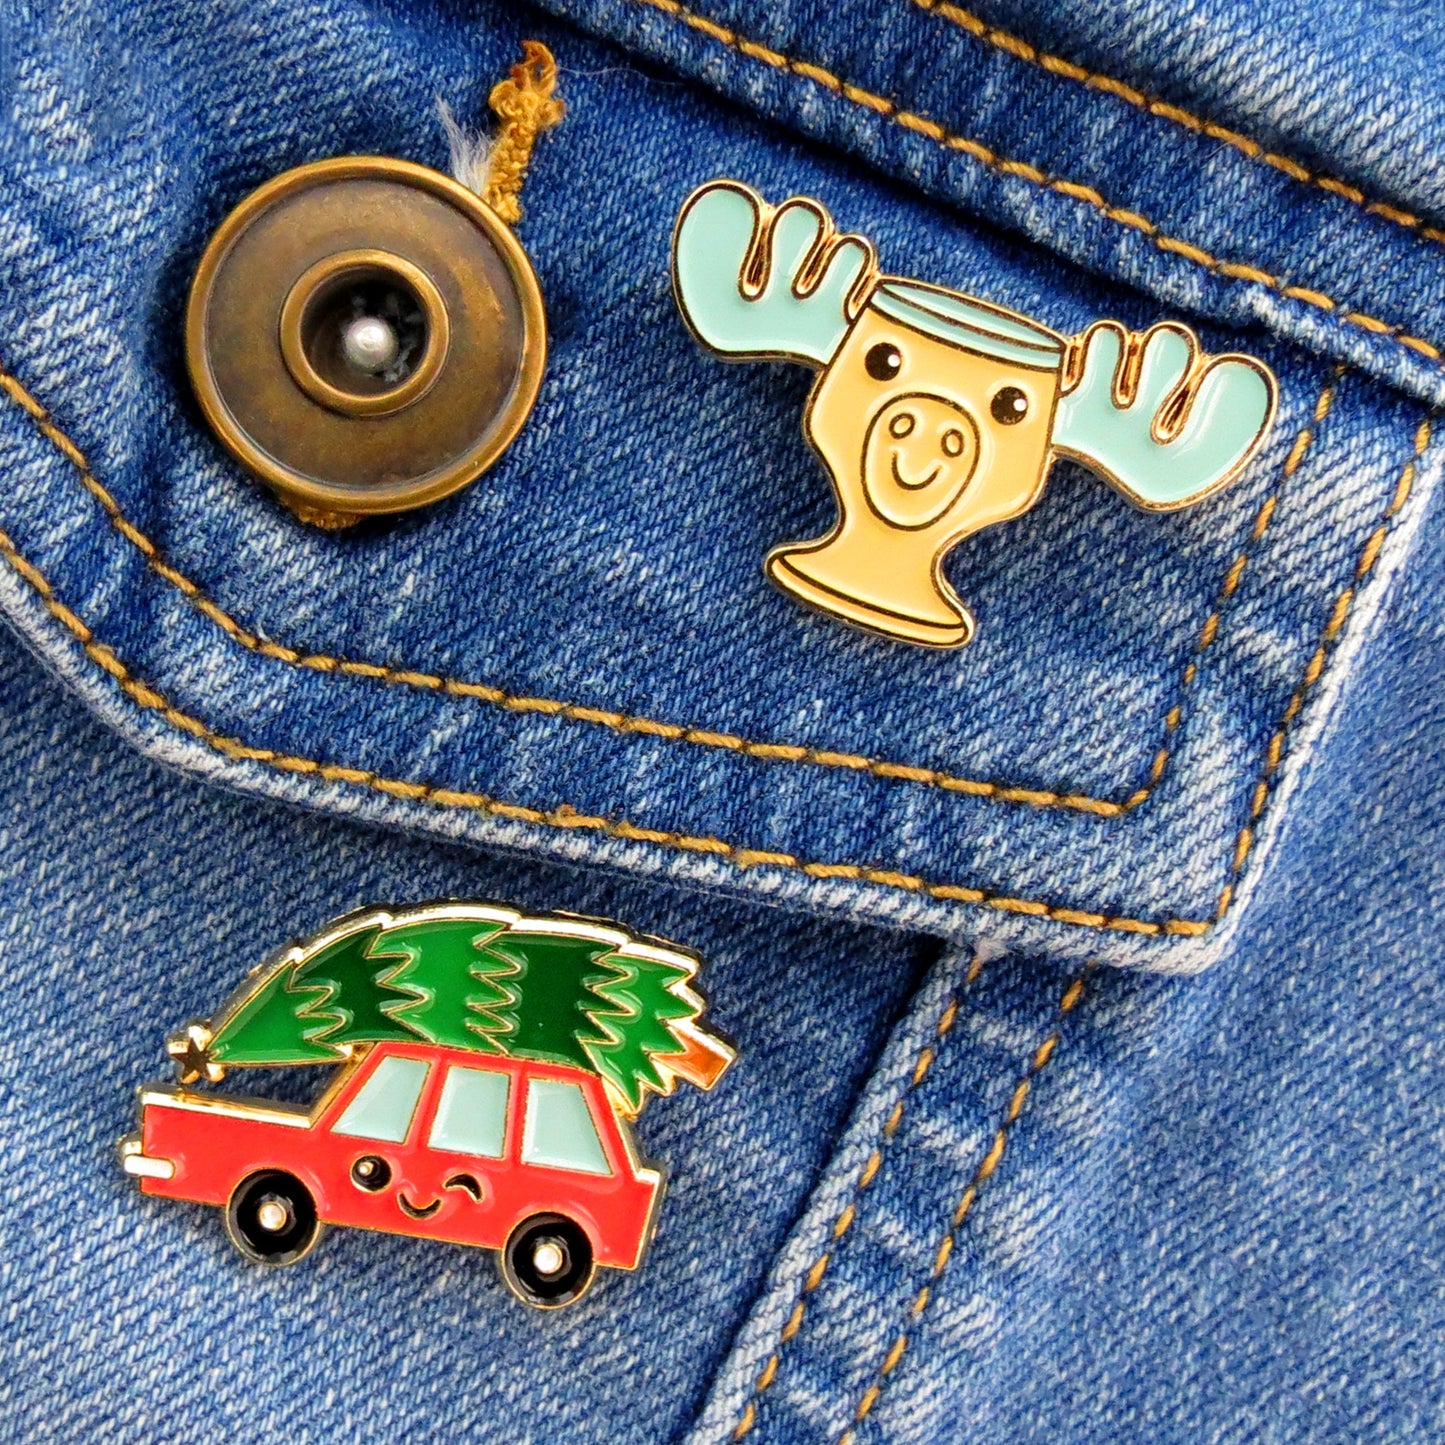 Christmas Vacation Car and Moose Mug enamel pins on jean jacket pocket